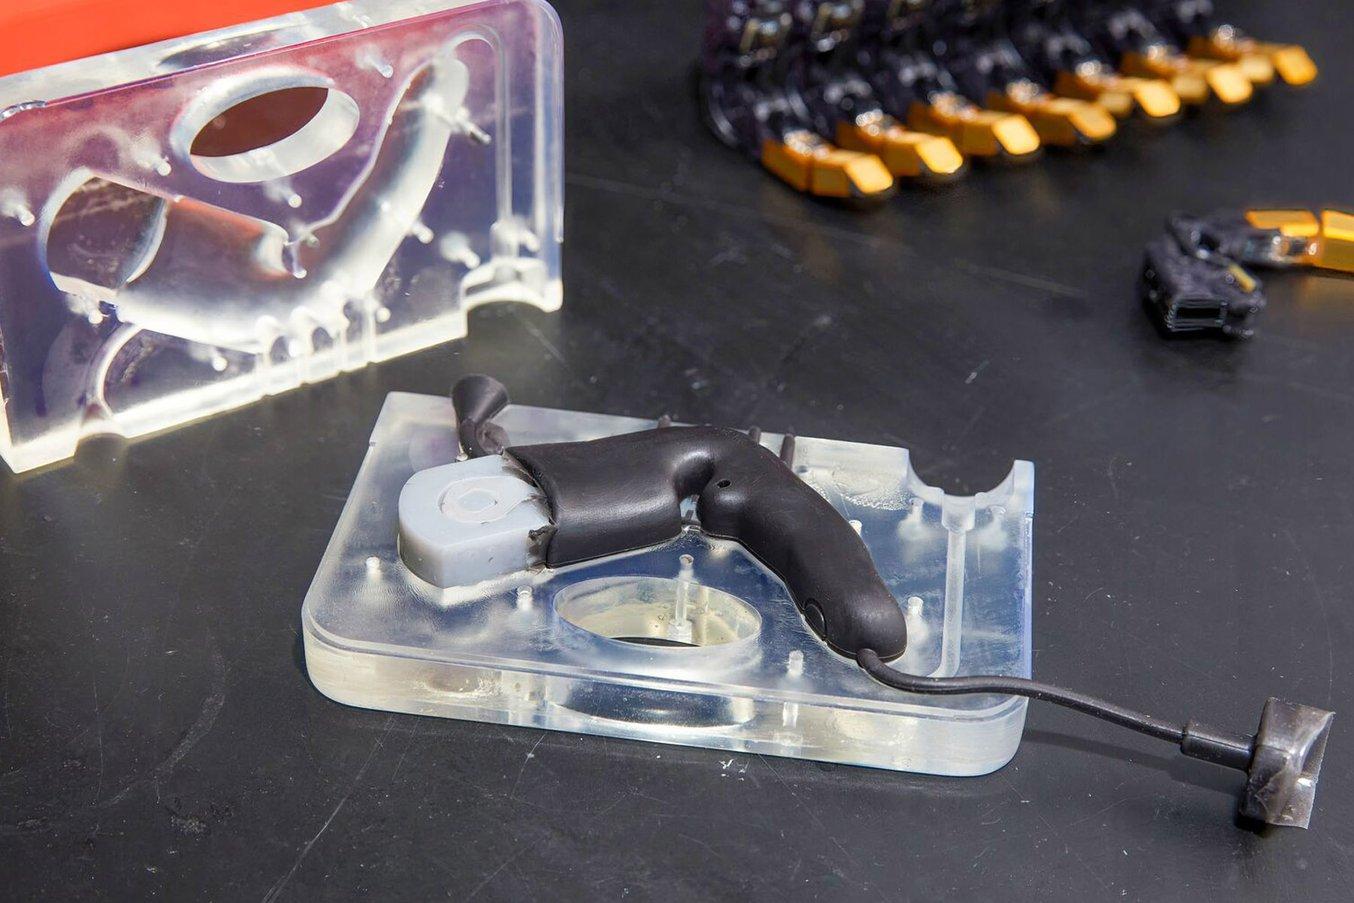 Psyonic utilizza lo stampaggio con inserti in silicone per creare dita per mani protesiche.